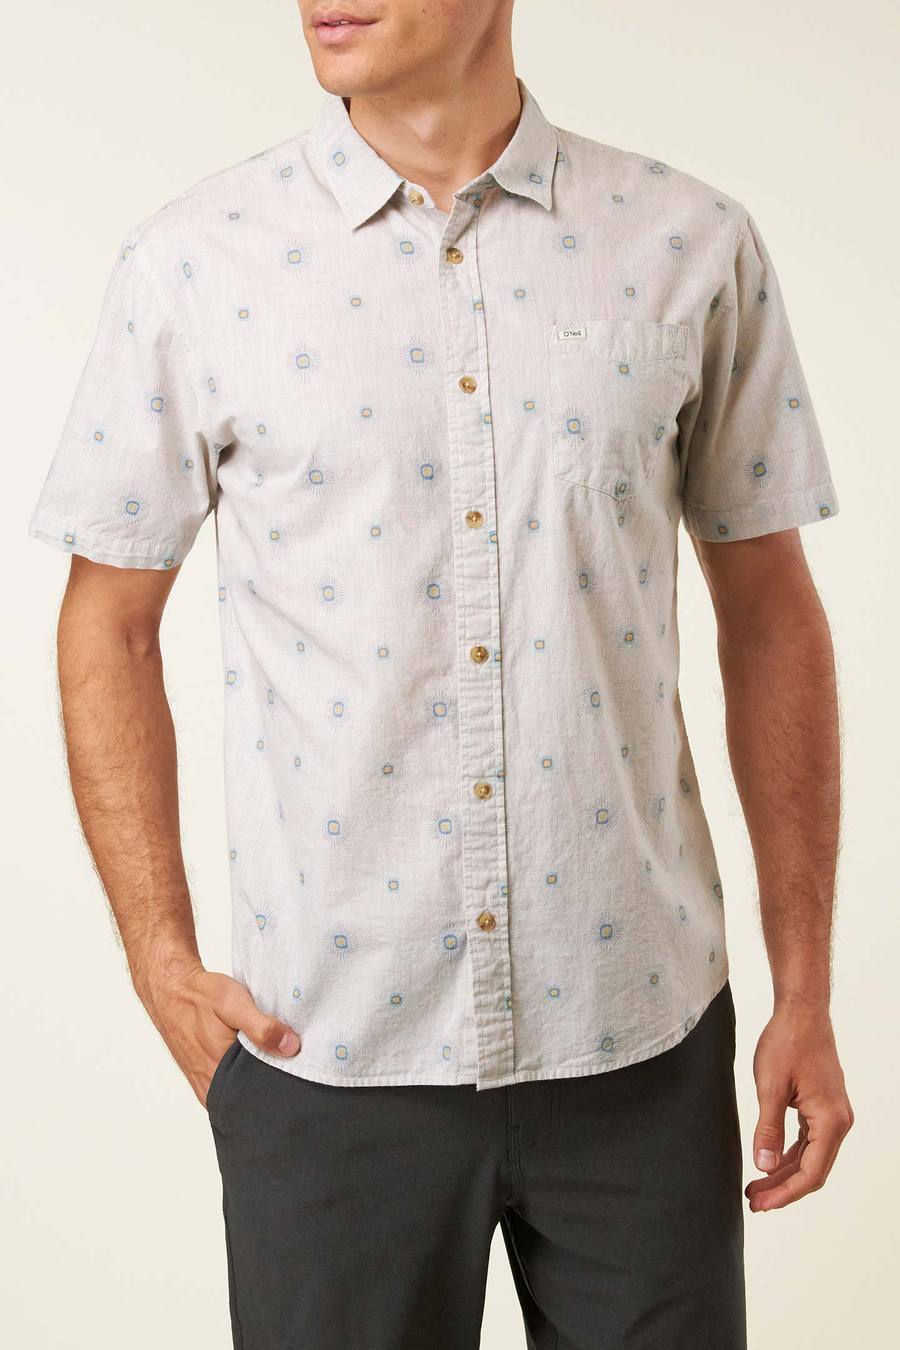 Oneill Leedo Shirt - Cream Mens Shirt